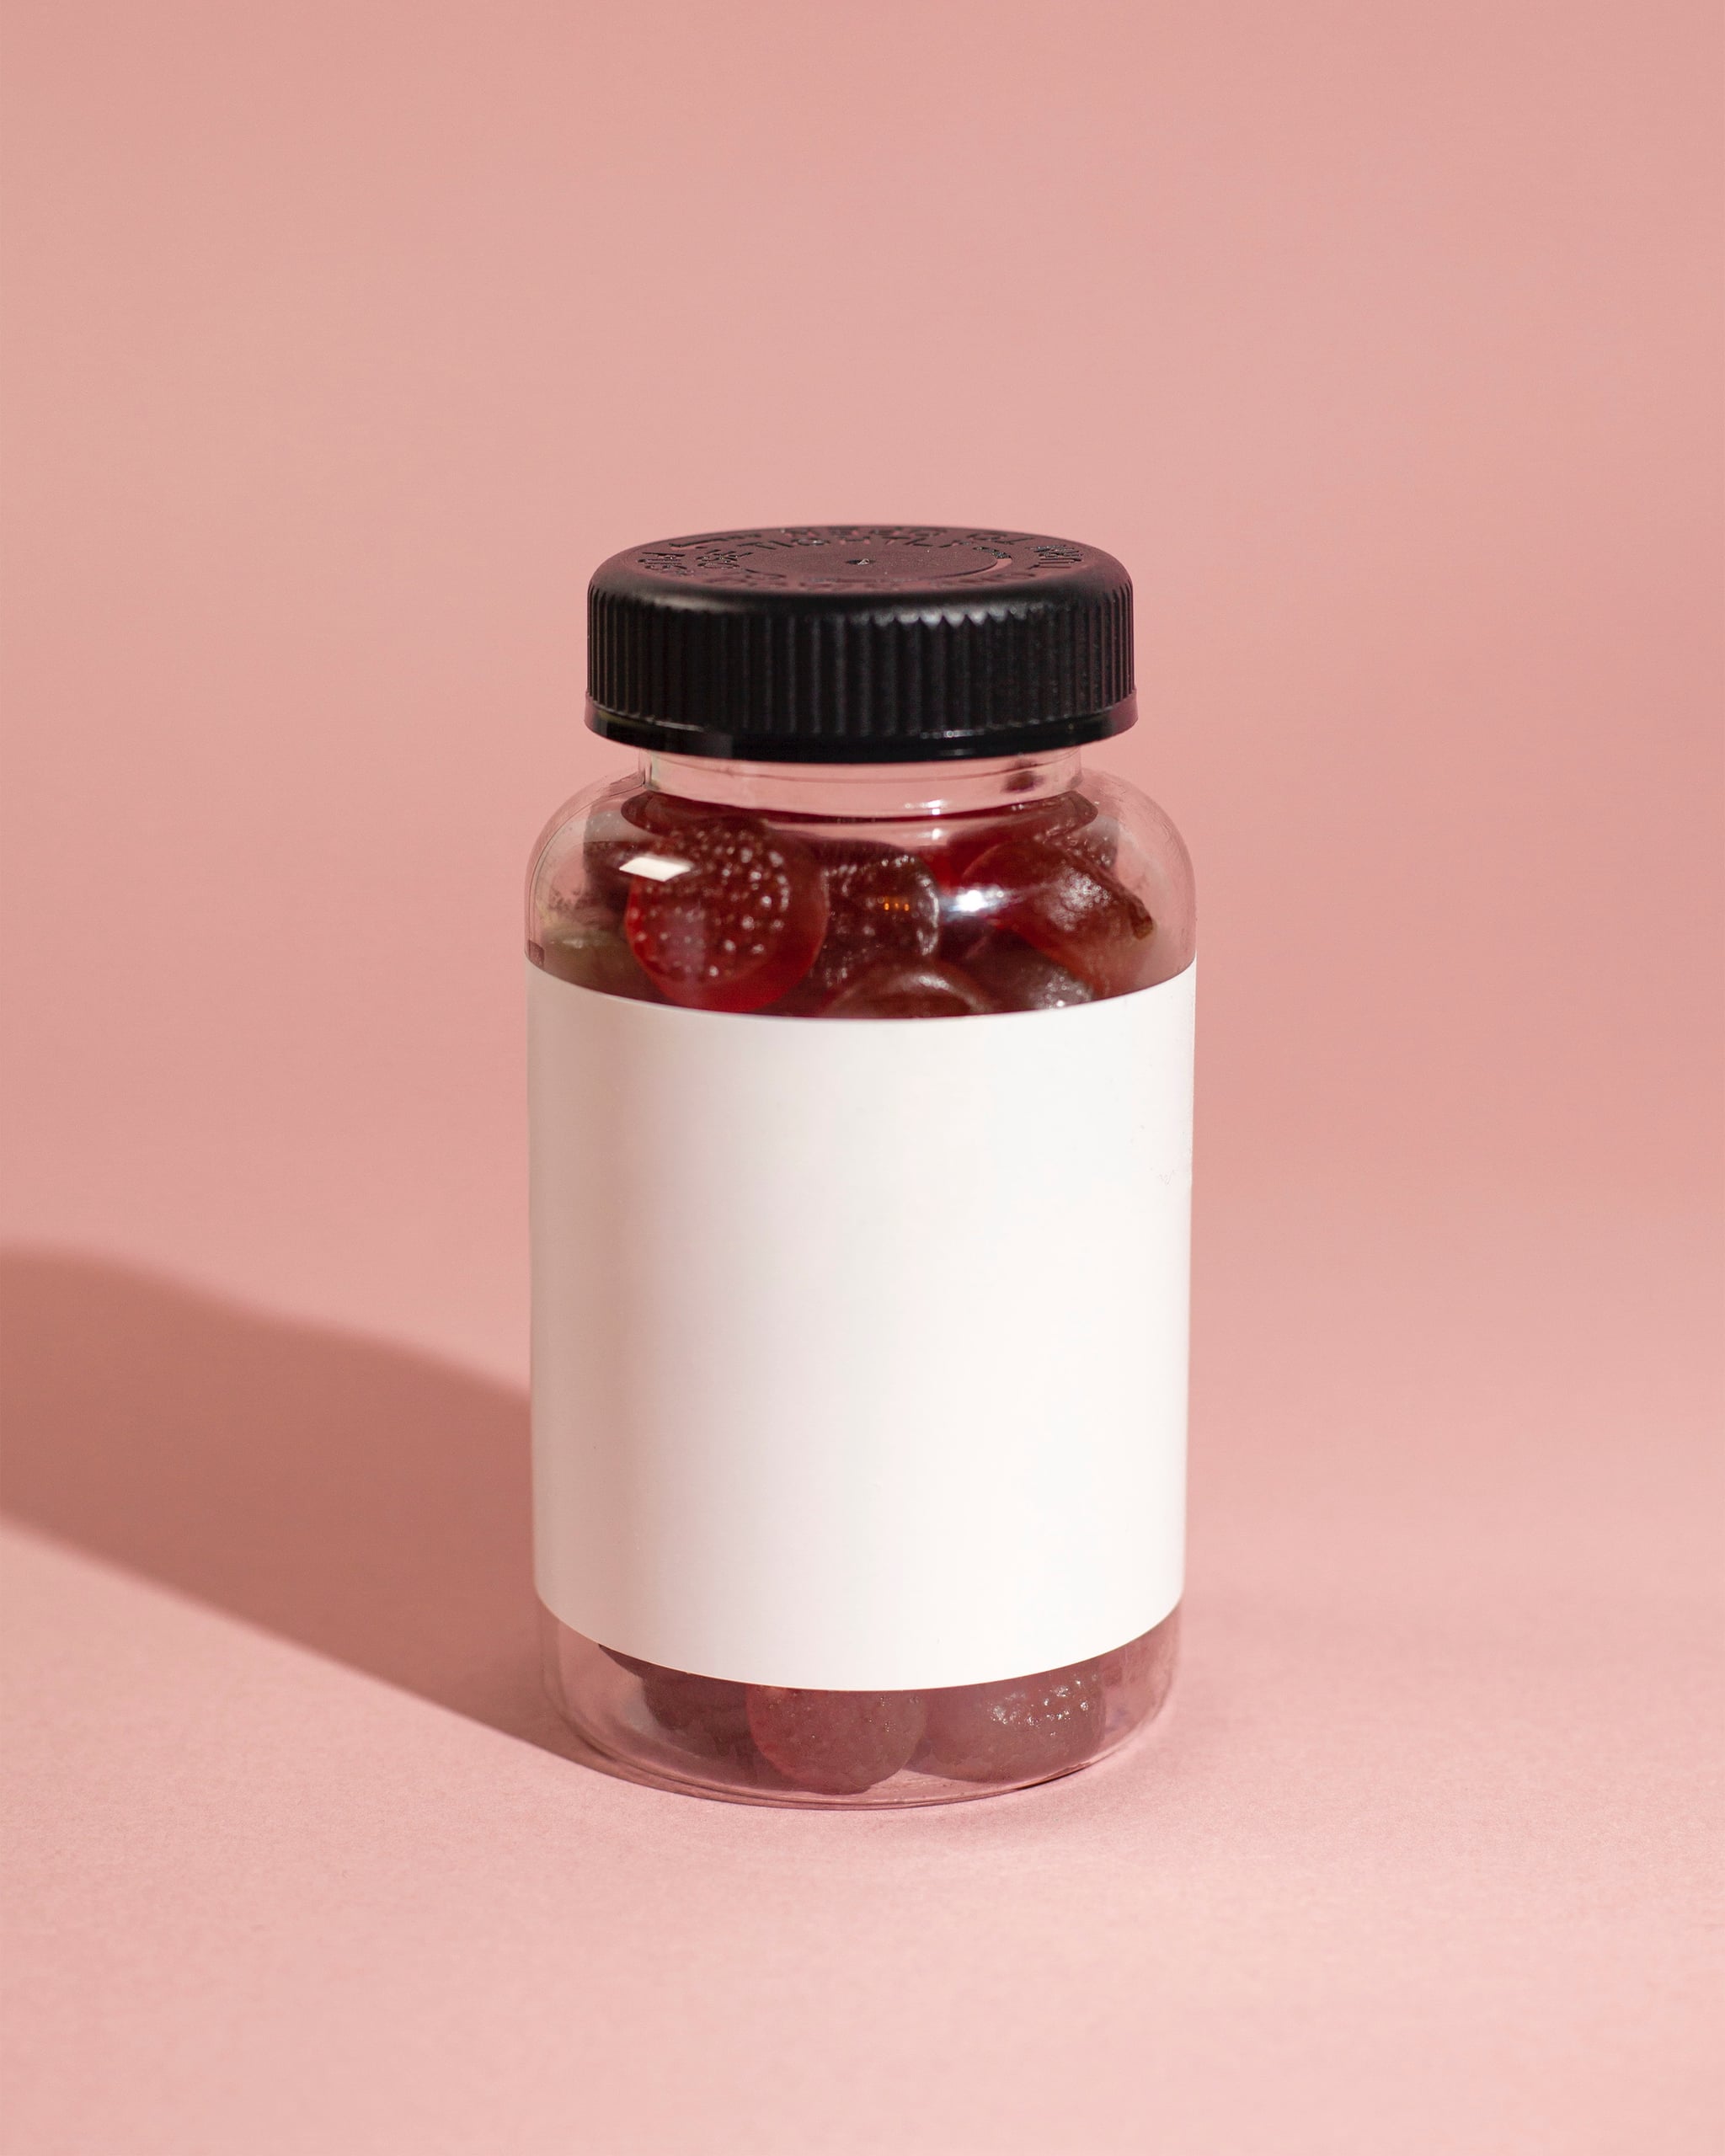 melatonin gummies in a bottle: are melatonin gummies safe?